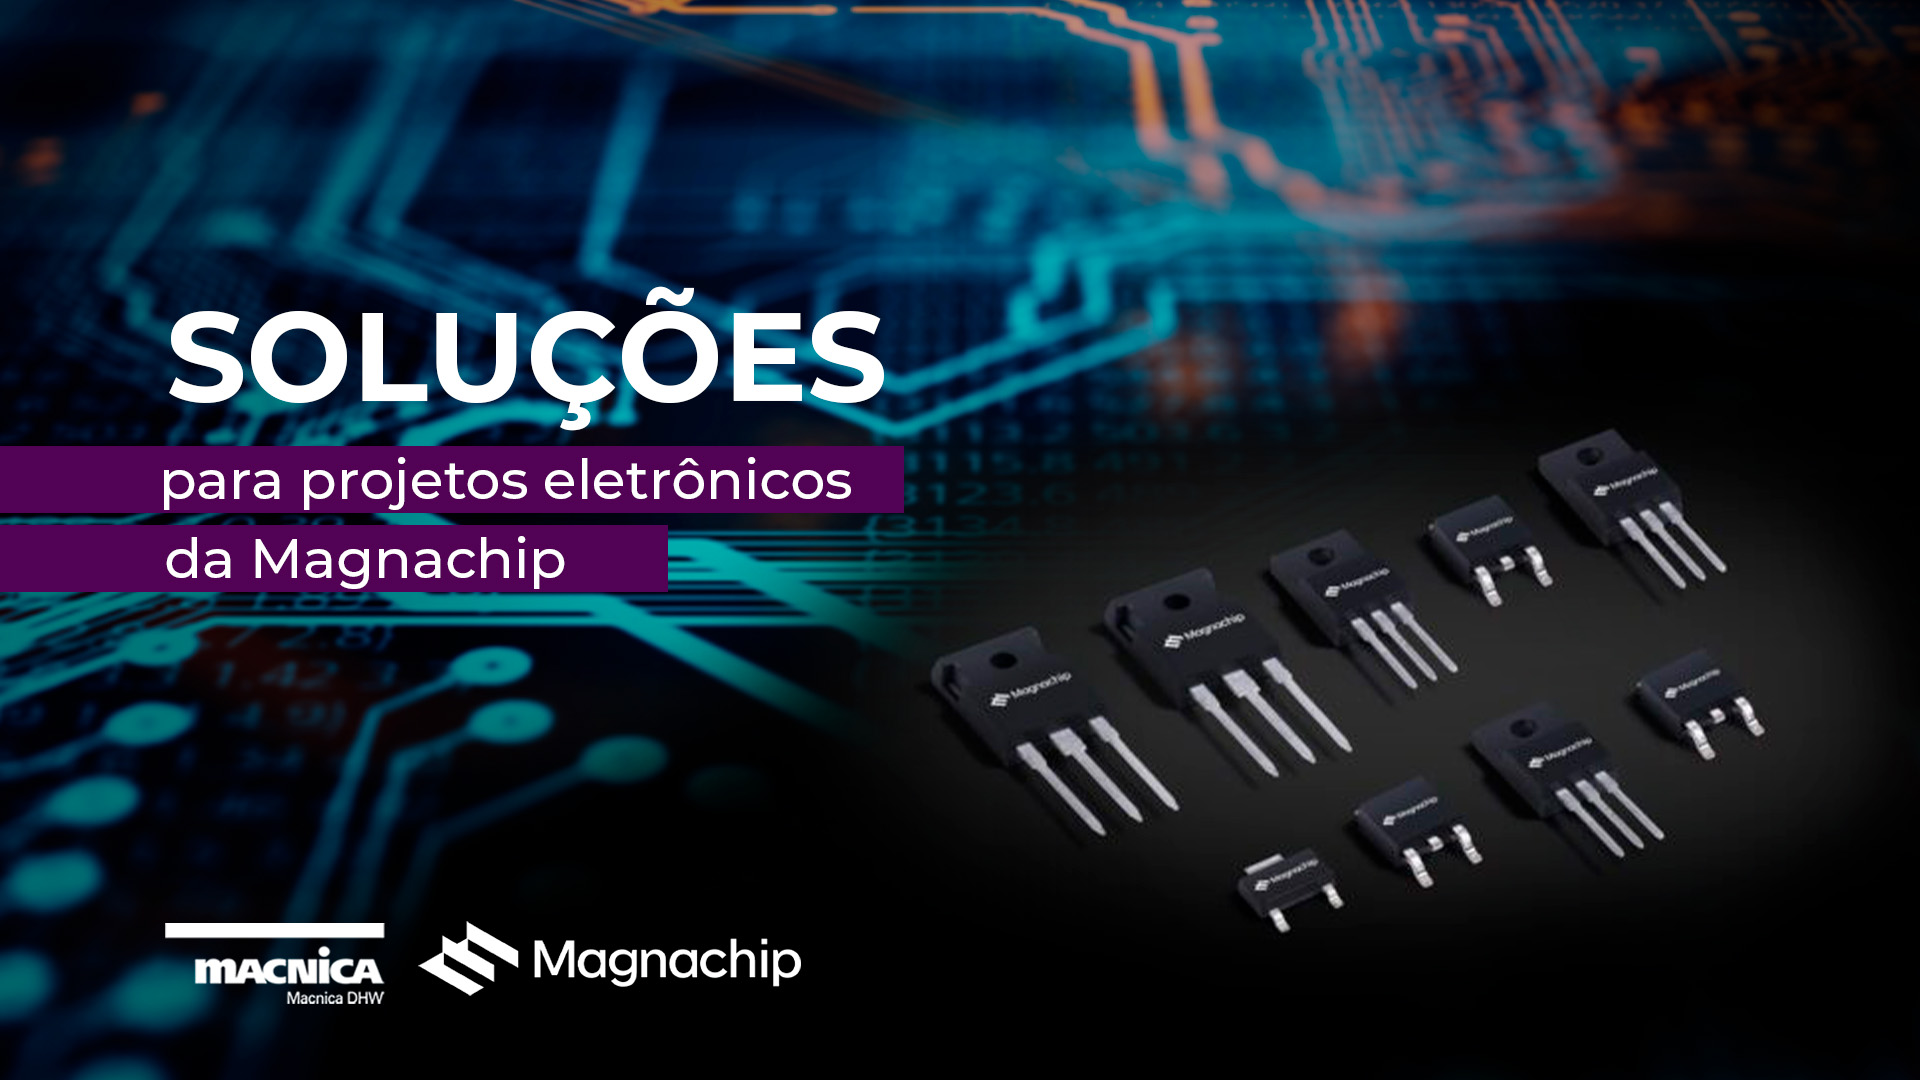 Soluções para projetos eletrônicos da Magnachip